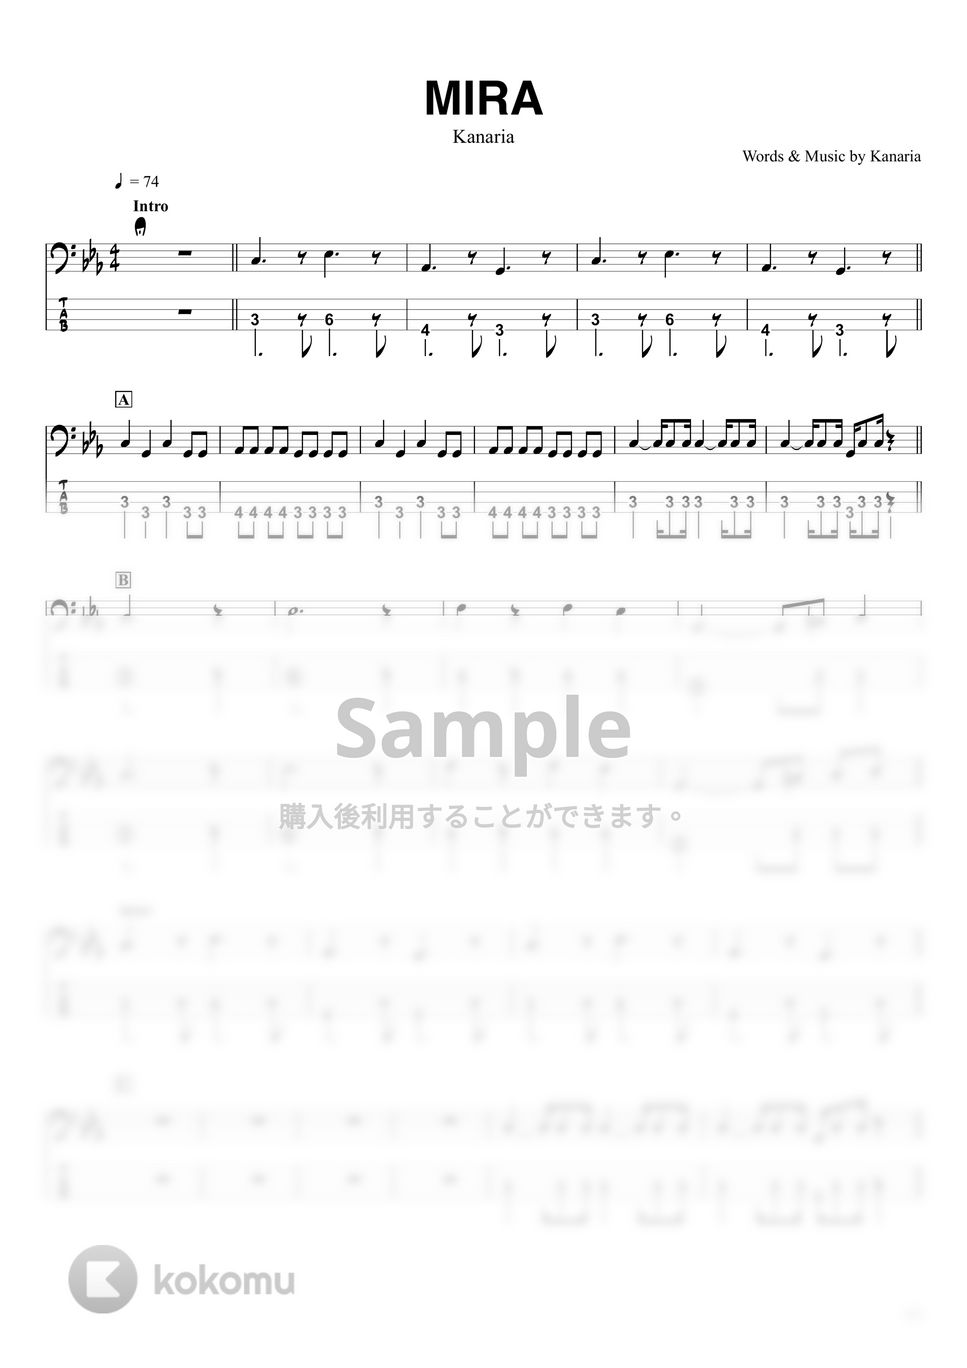 Kanaria - MIRA (ベースTAB譜☆4弦ベース対応) by swbass